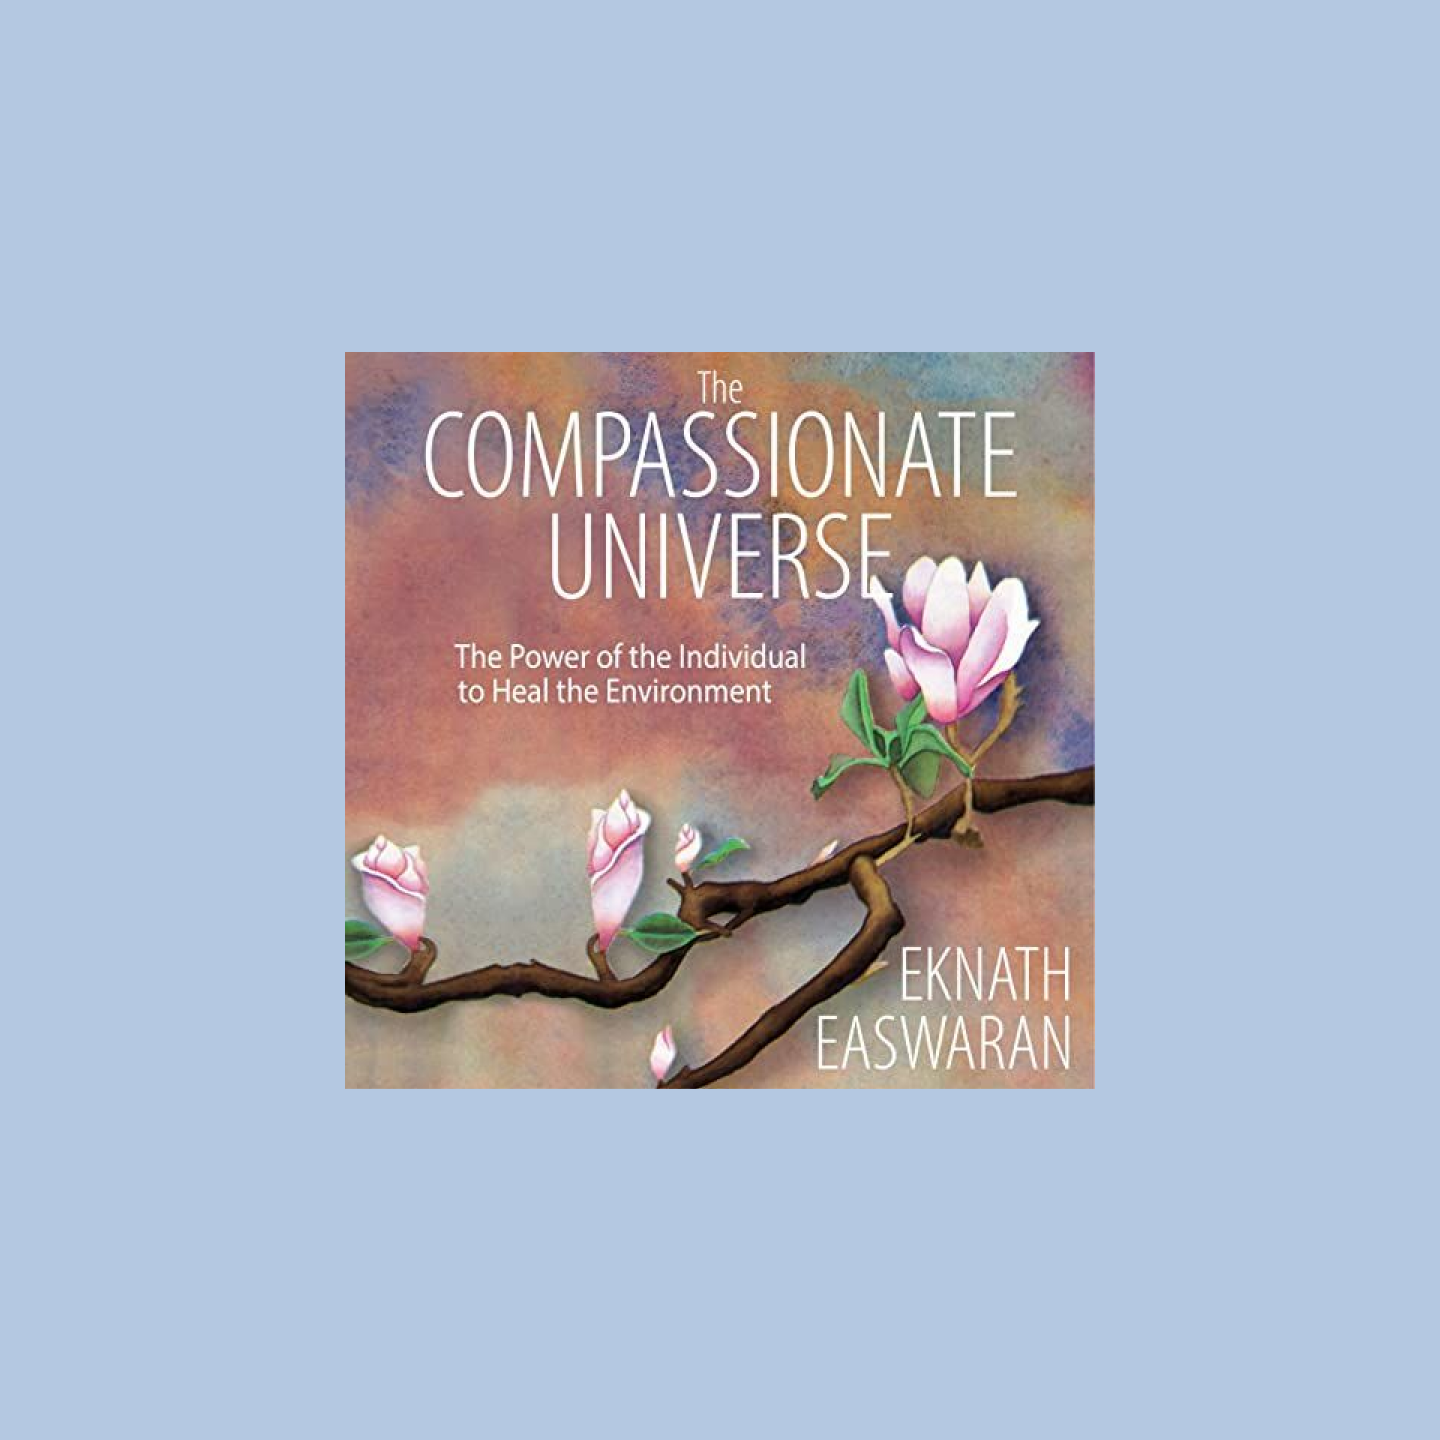 Portada de un audiolibro con el título "The Compassionate Universe" (El universo misericordioso) y con un cerezo en flor